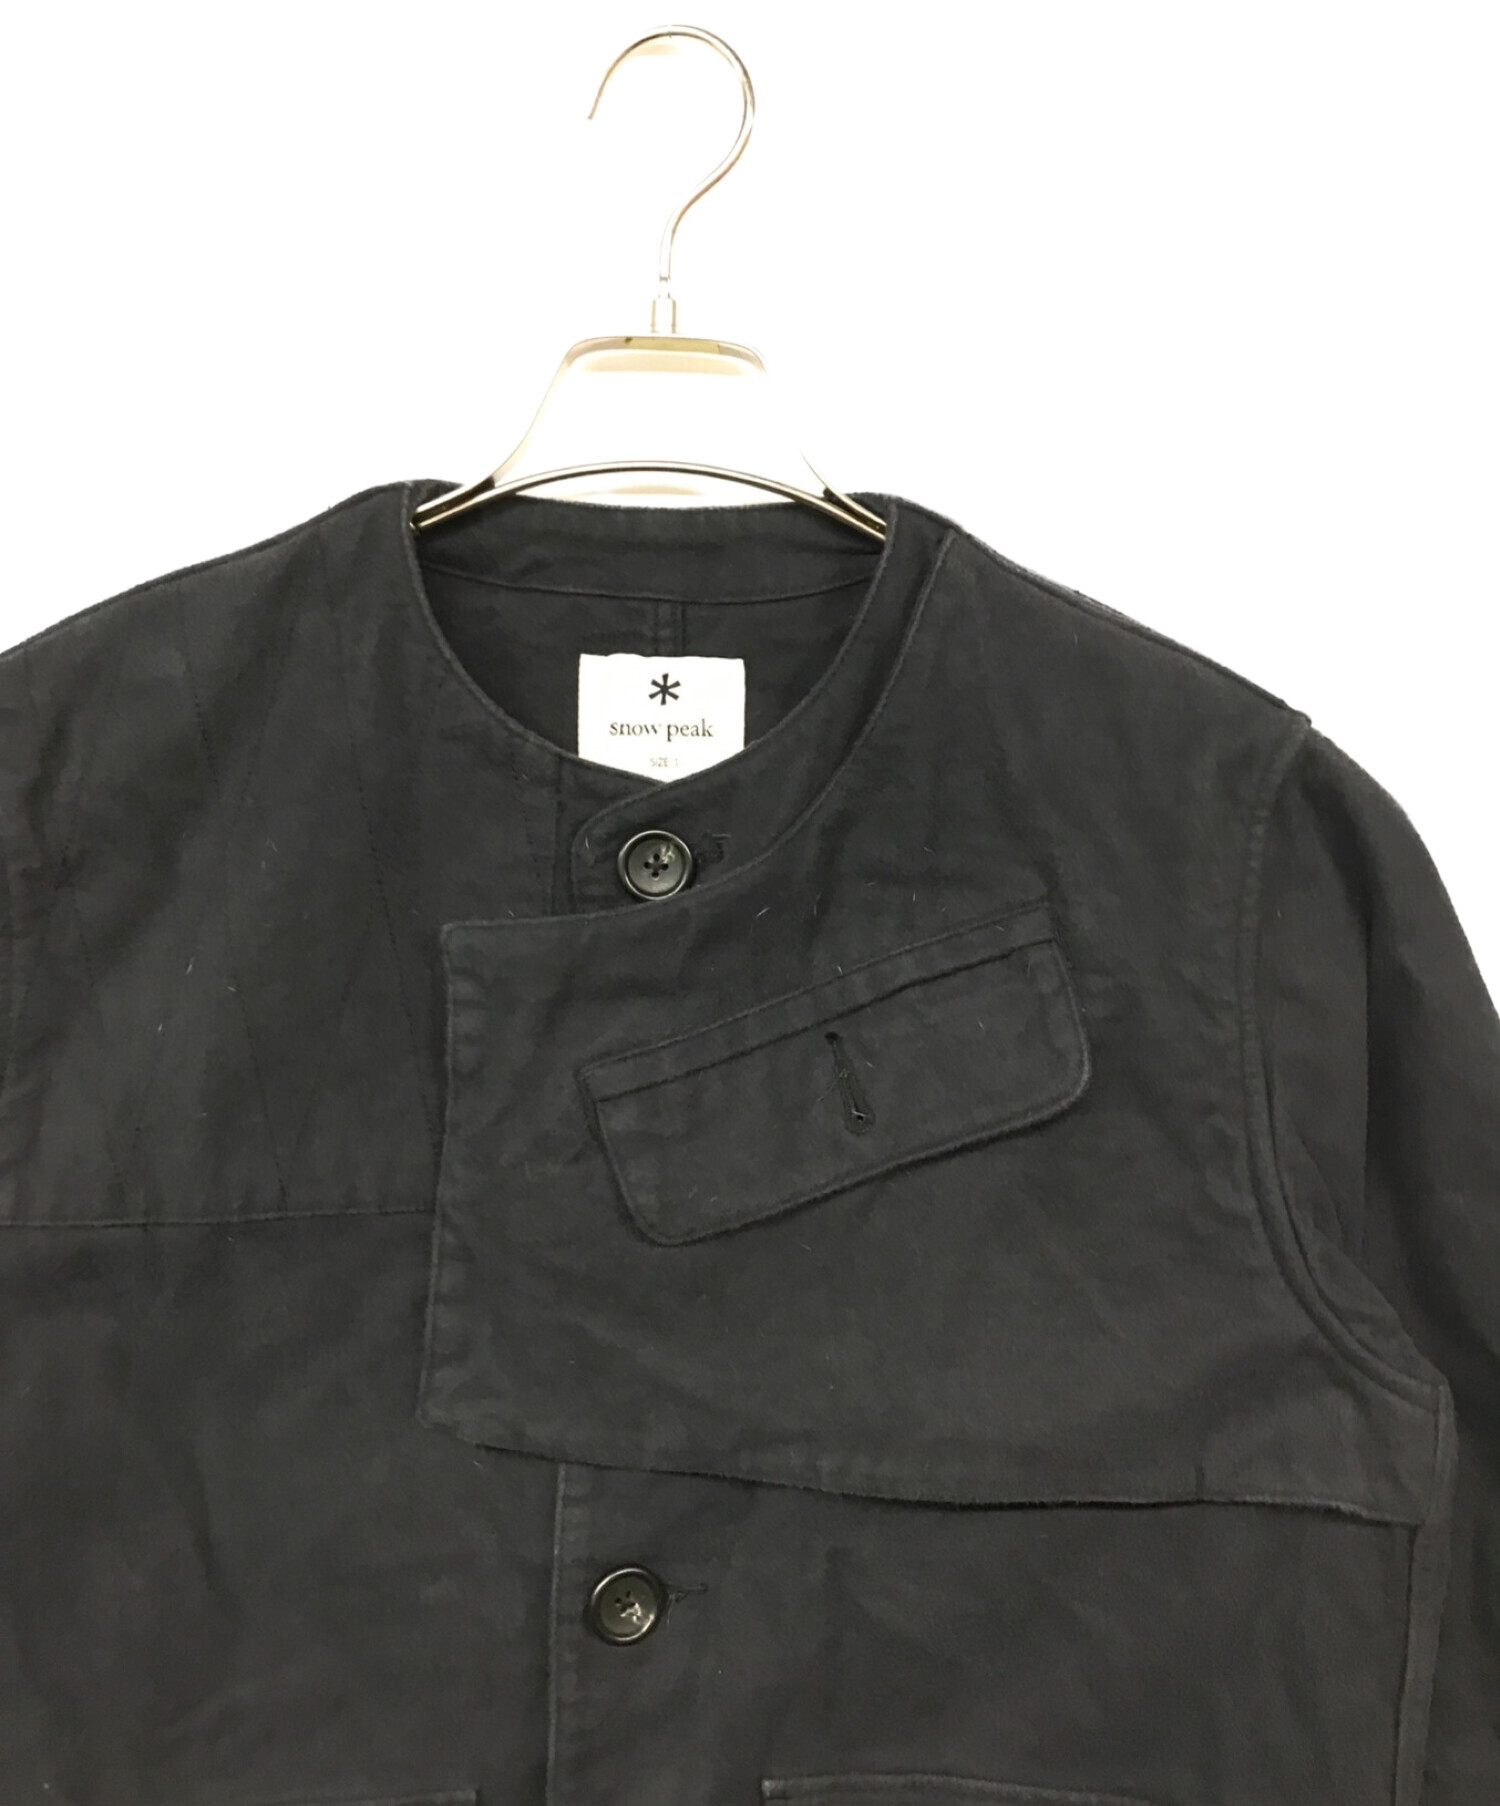 39600円Snow peak Army Cloth Jacket Sサイズ - ノーカラージャケット